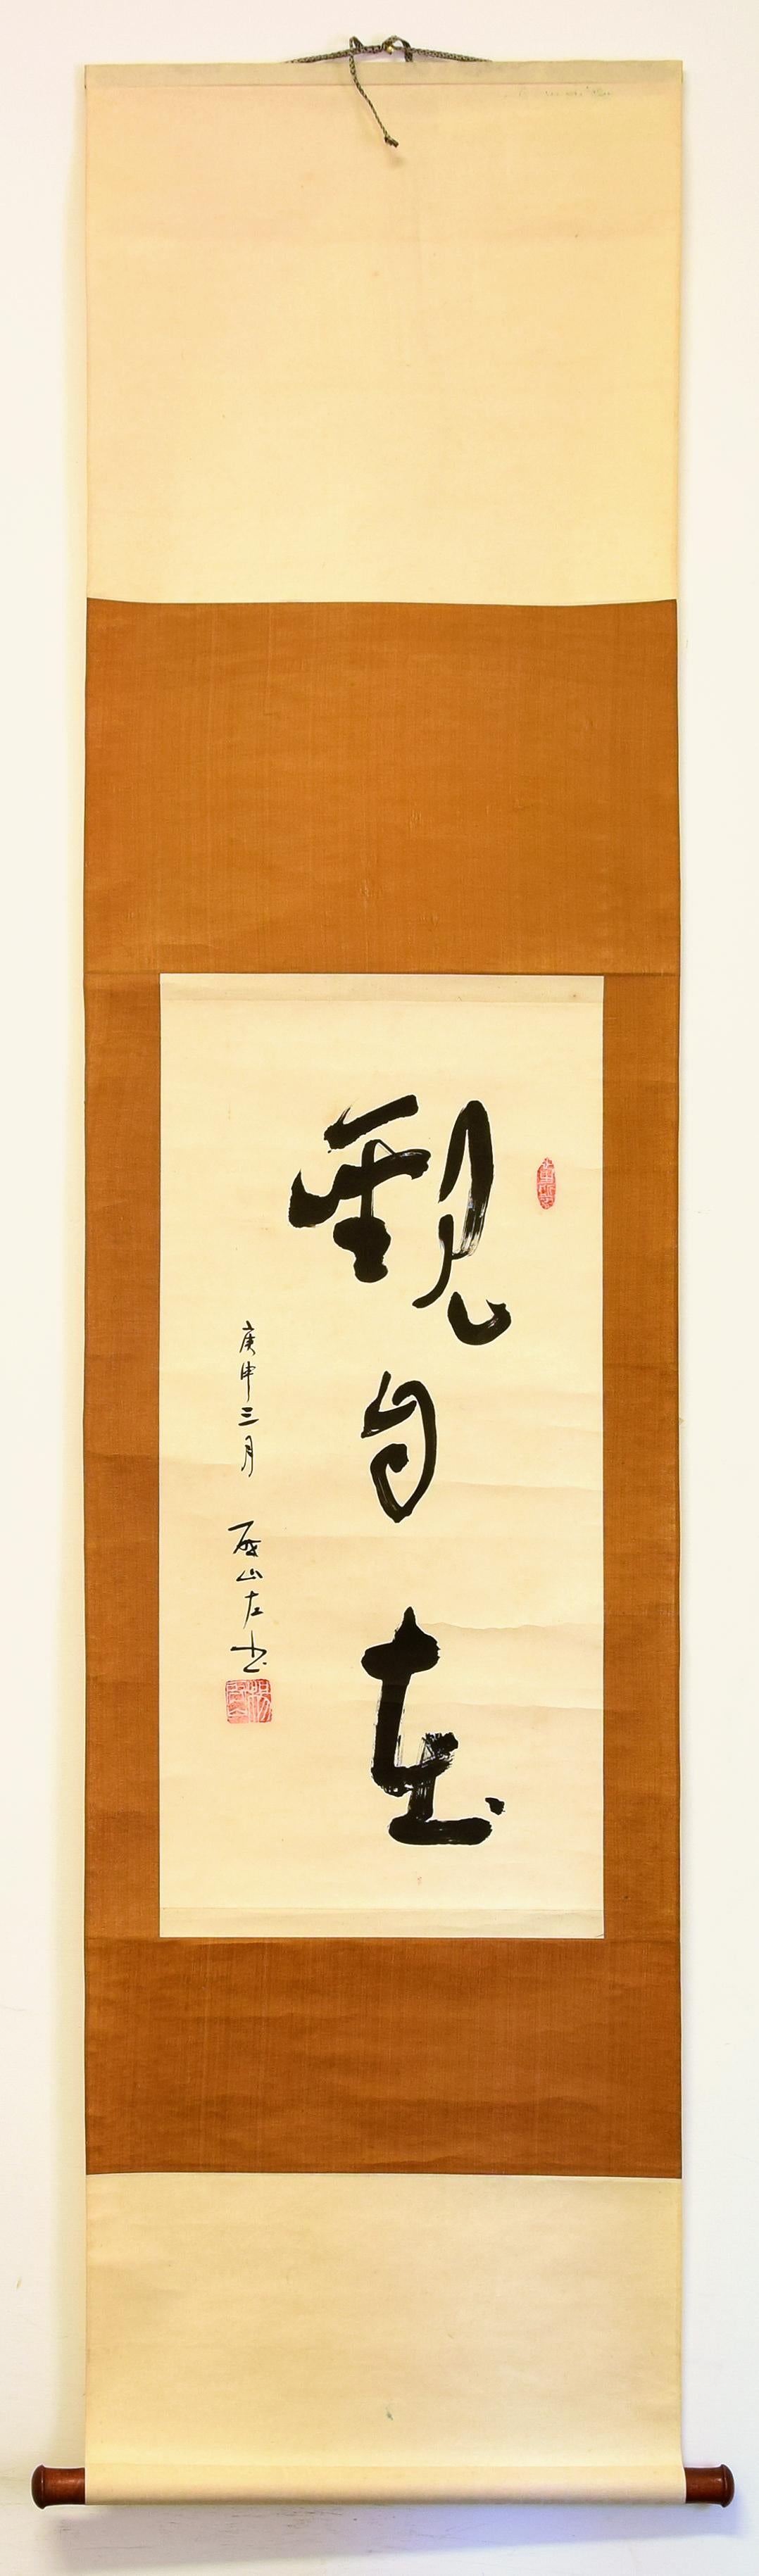 Guan Zi Zai ist eine wunderschöne künstlerische Kalligraphie in chinesischer Tinte auf Xuan-Papier, die der chinesische Künstler Sheng Zuoshan im März 1920 geschaffen hat.

Die Signatur des Künstlers erscheint unten links in schwarzer Tinte.

Es